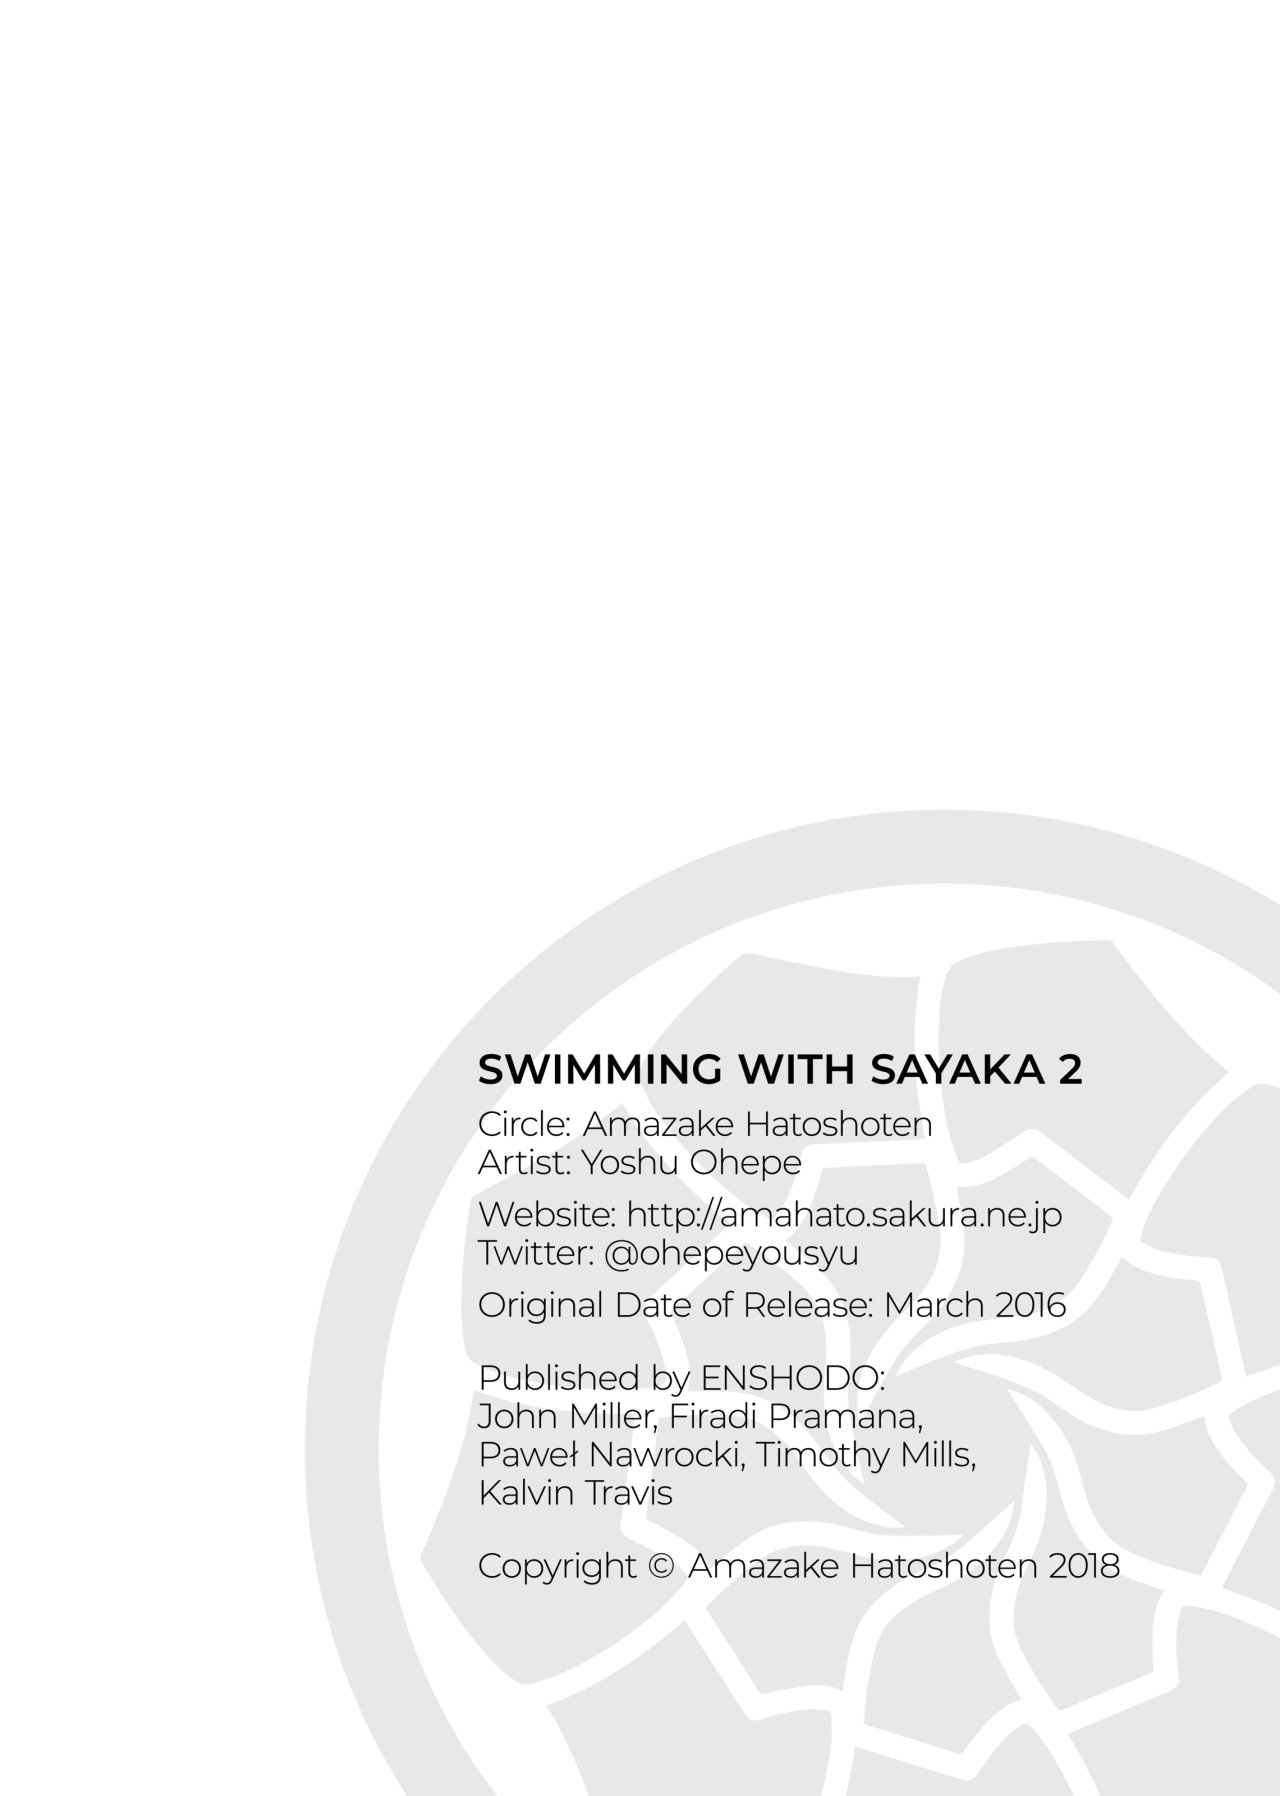 Nadando con sayaka - 02 - 18